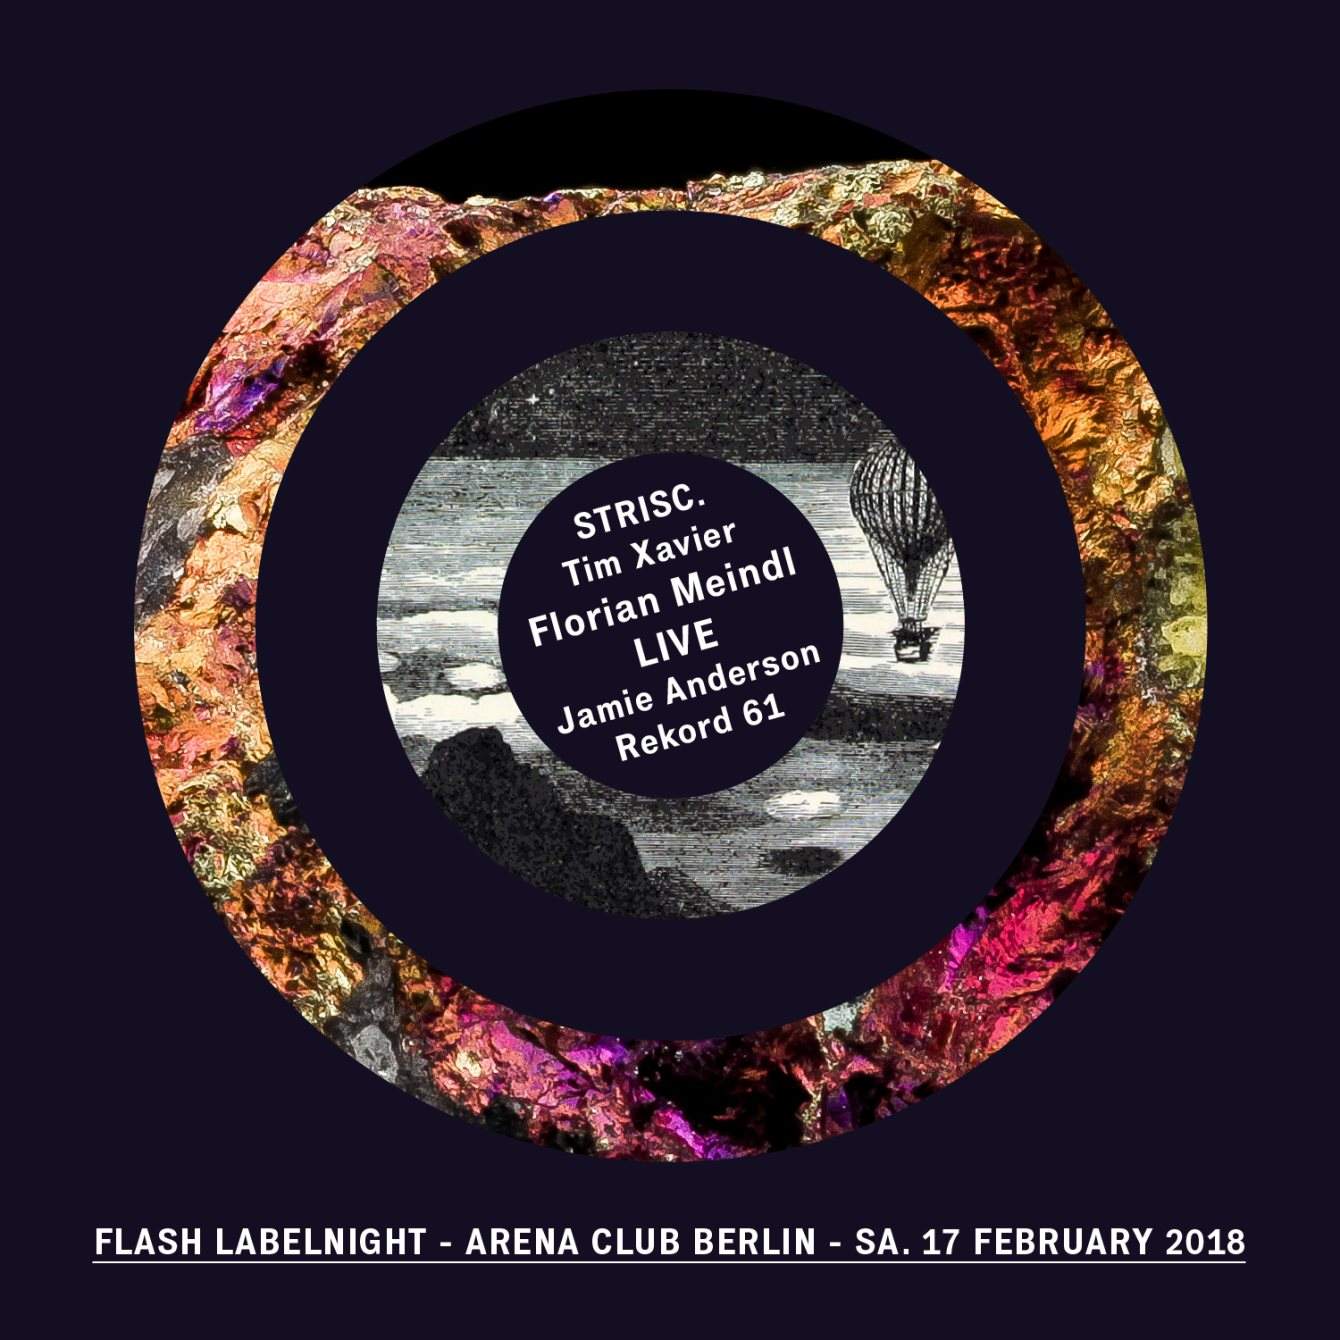 Flash Labelnight - Florian Meindl Live / Strisc. / Rekord 61 / Tim Xavier / Jamie Anderson - フライヤー表